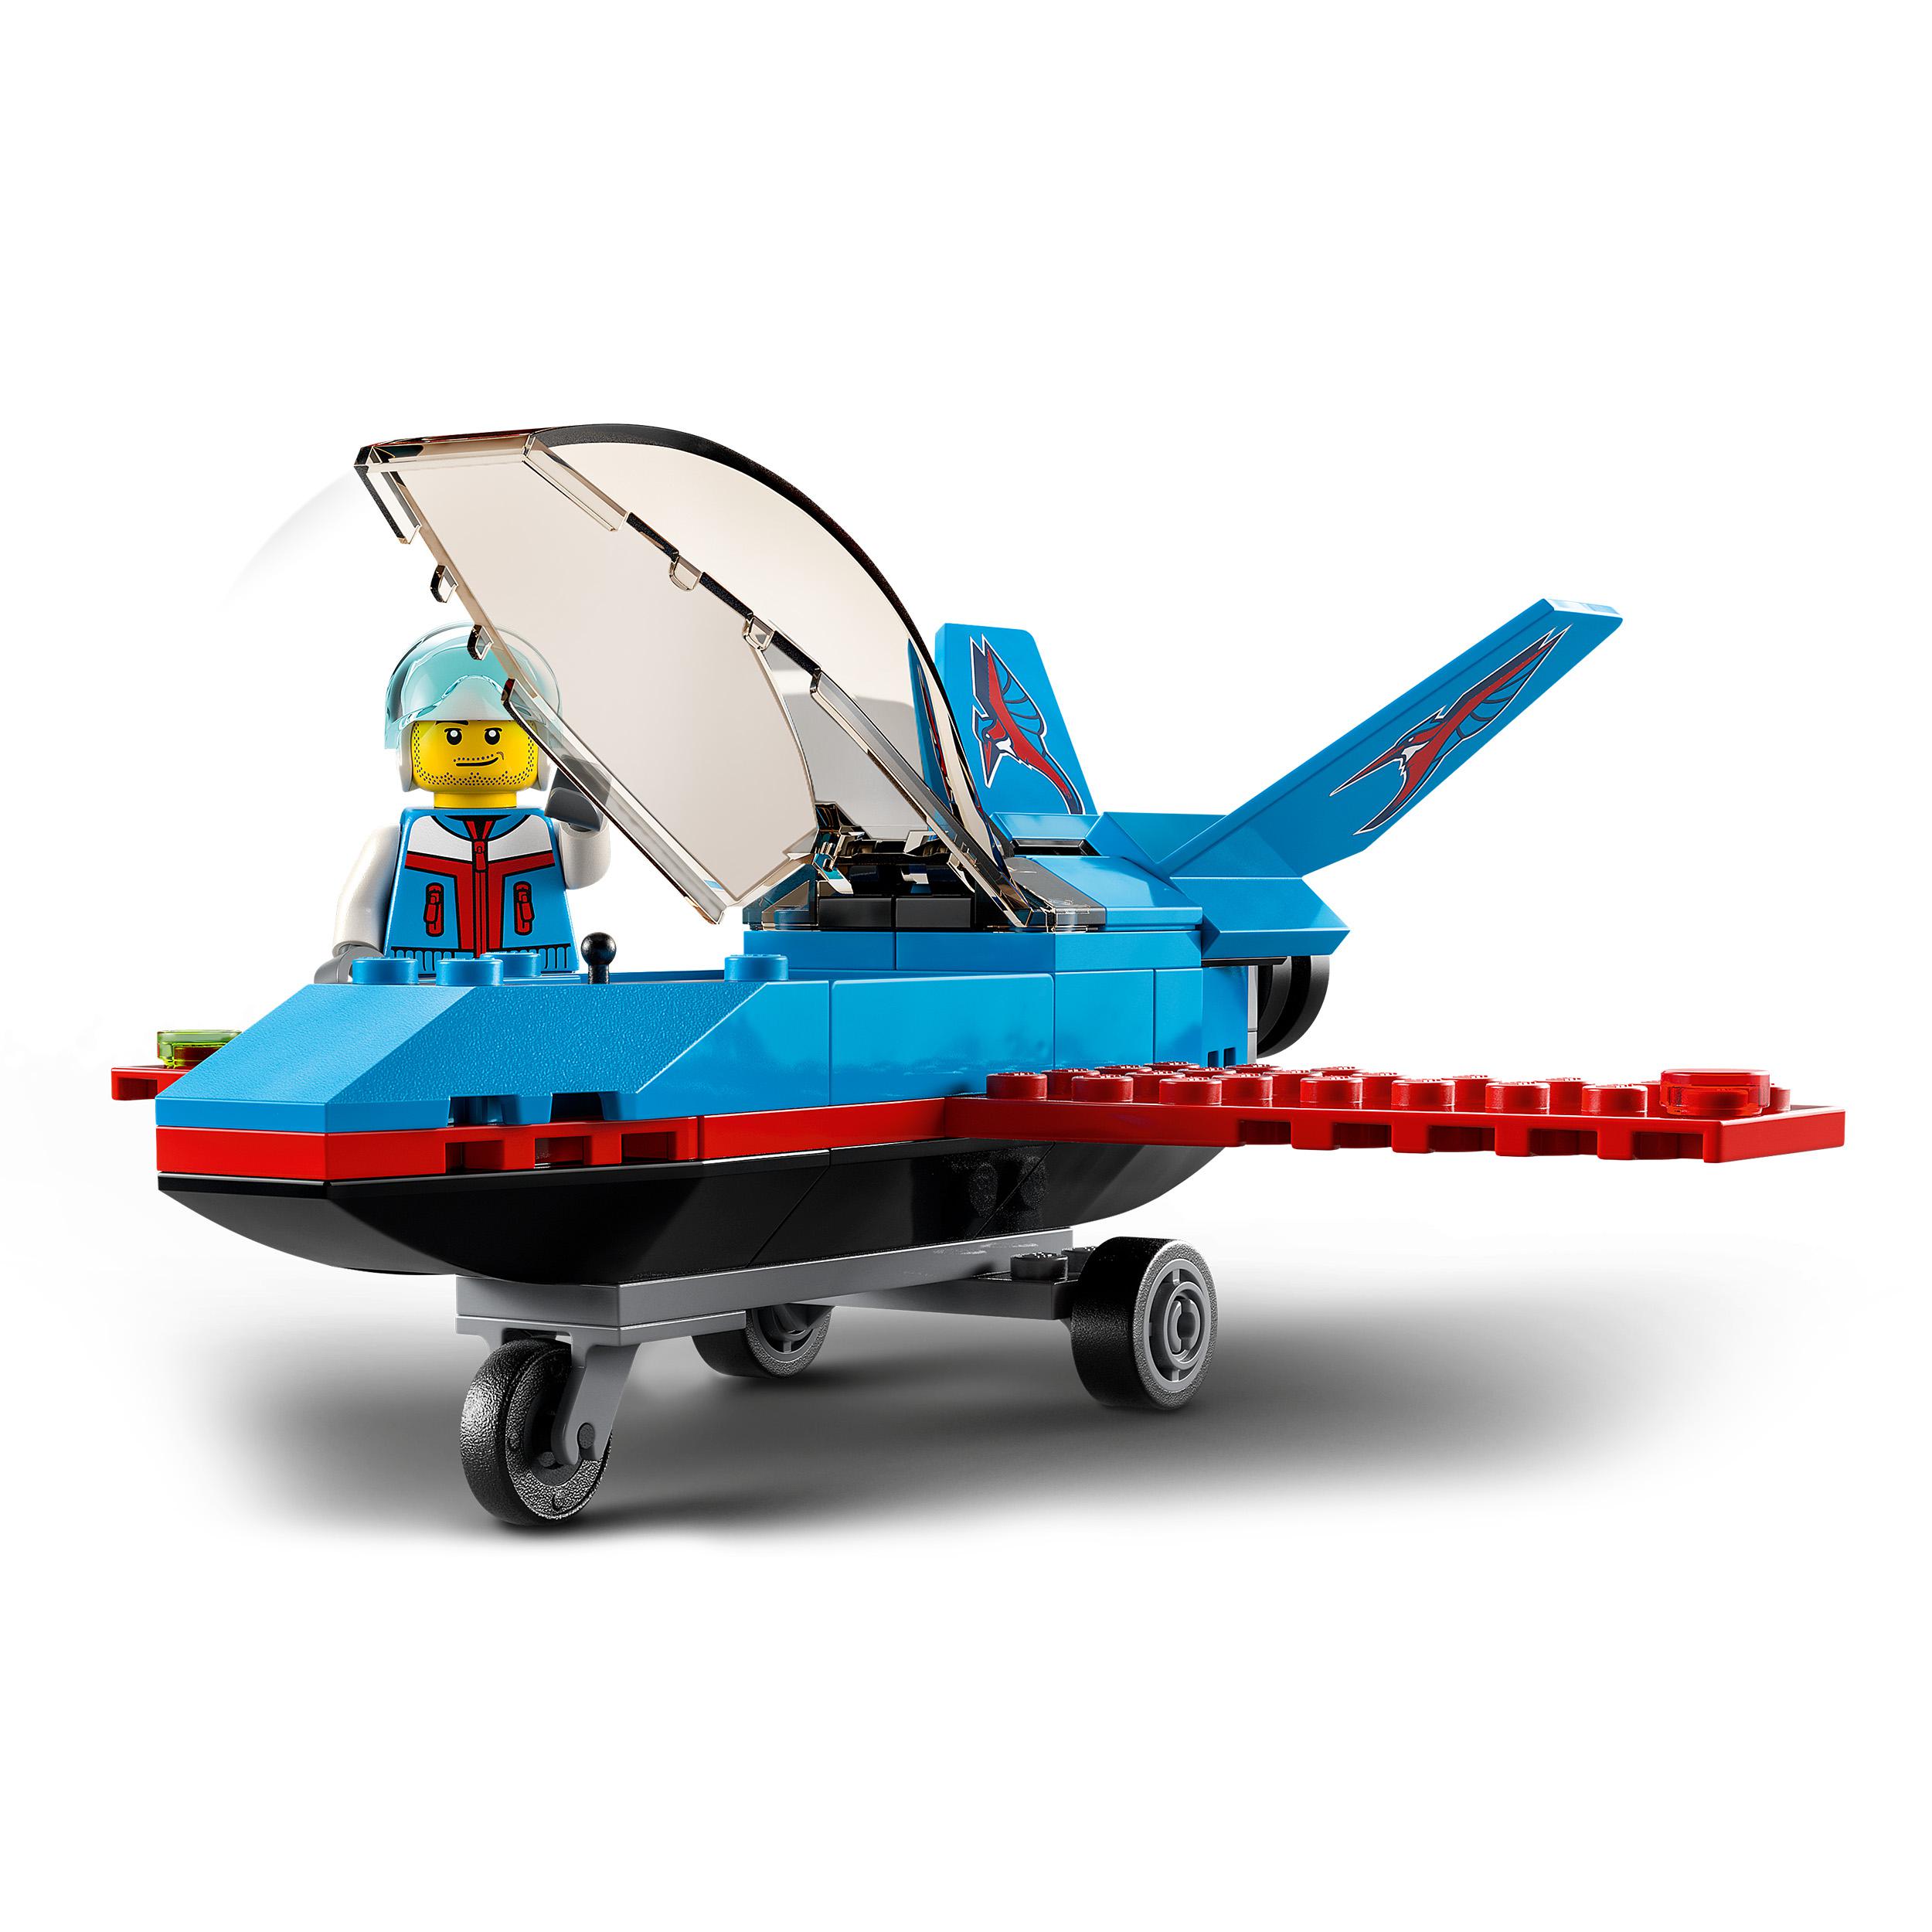 LEGO City Great Vehicles Aereo Acrobatico, Giocattolo con Minifigure del Pilota, 60323, , large